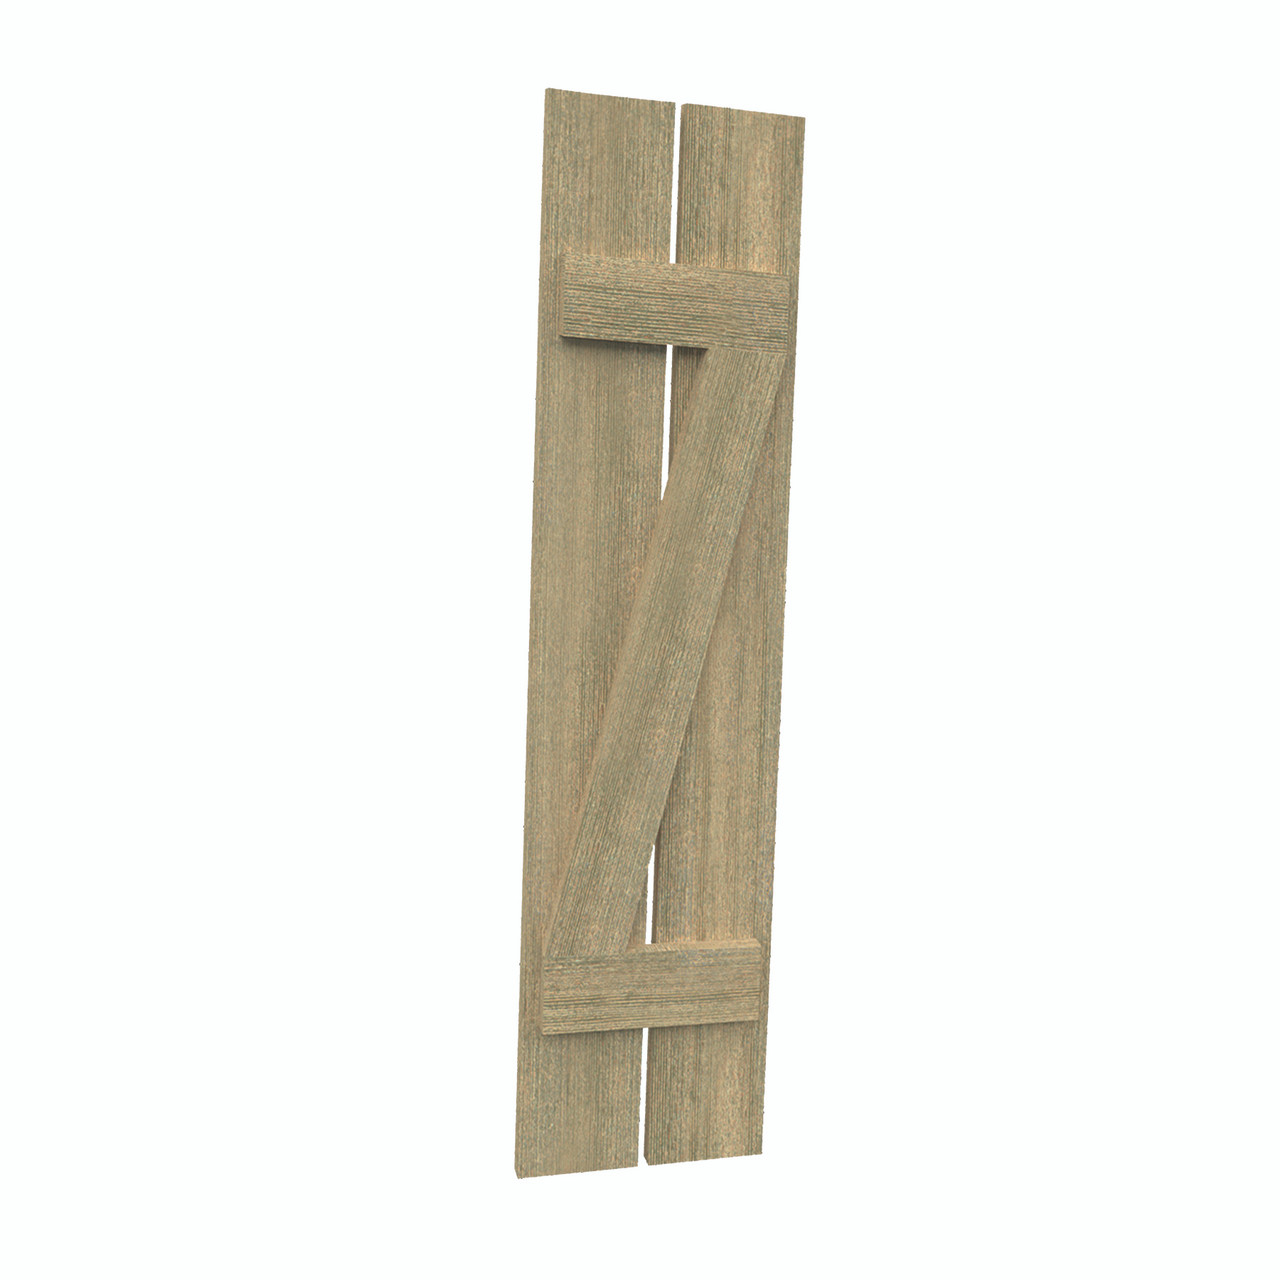 12 inch by 57 inch Plank Shutter with 2-Plank, Z-Batten